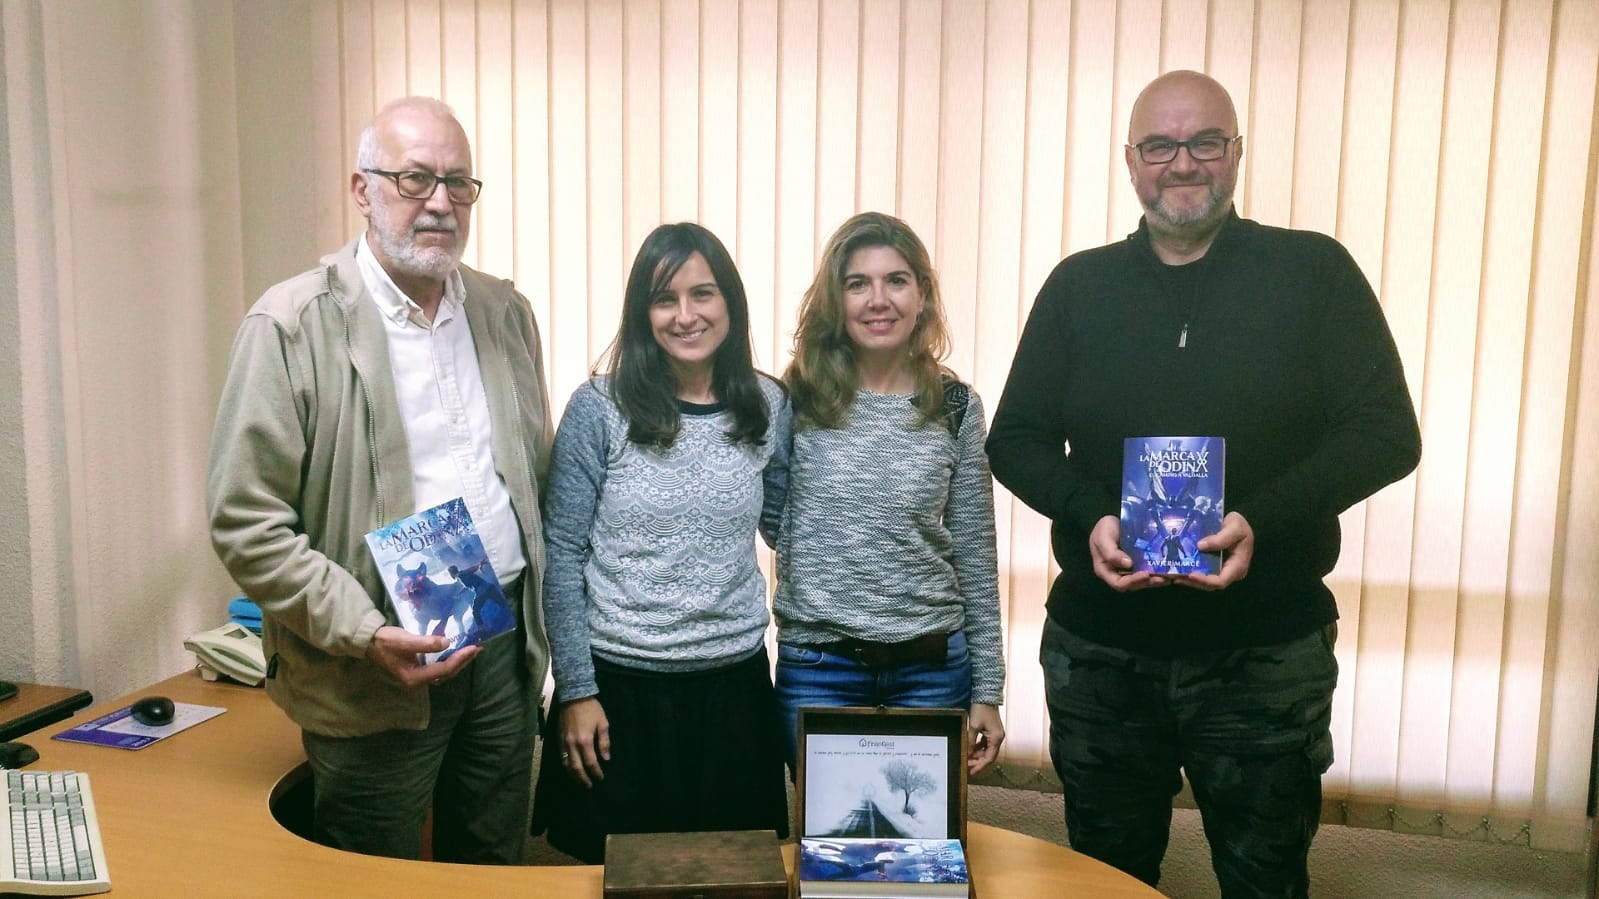 La asesoría y gestoría de Alicante, Finangest, regaló los libros de La marca de Odín a sus clientes por Navidad